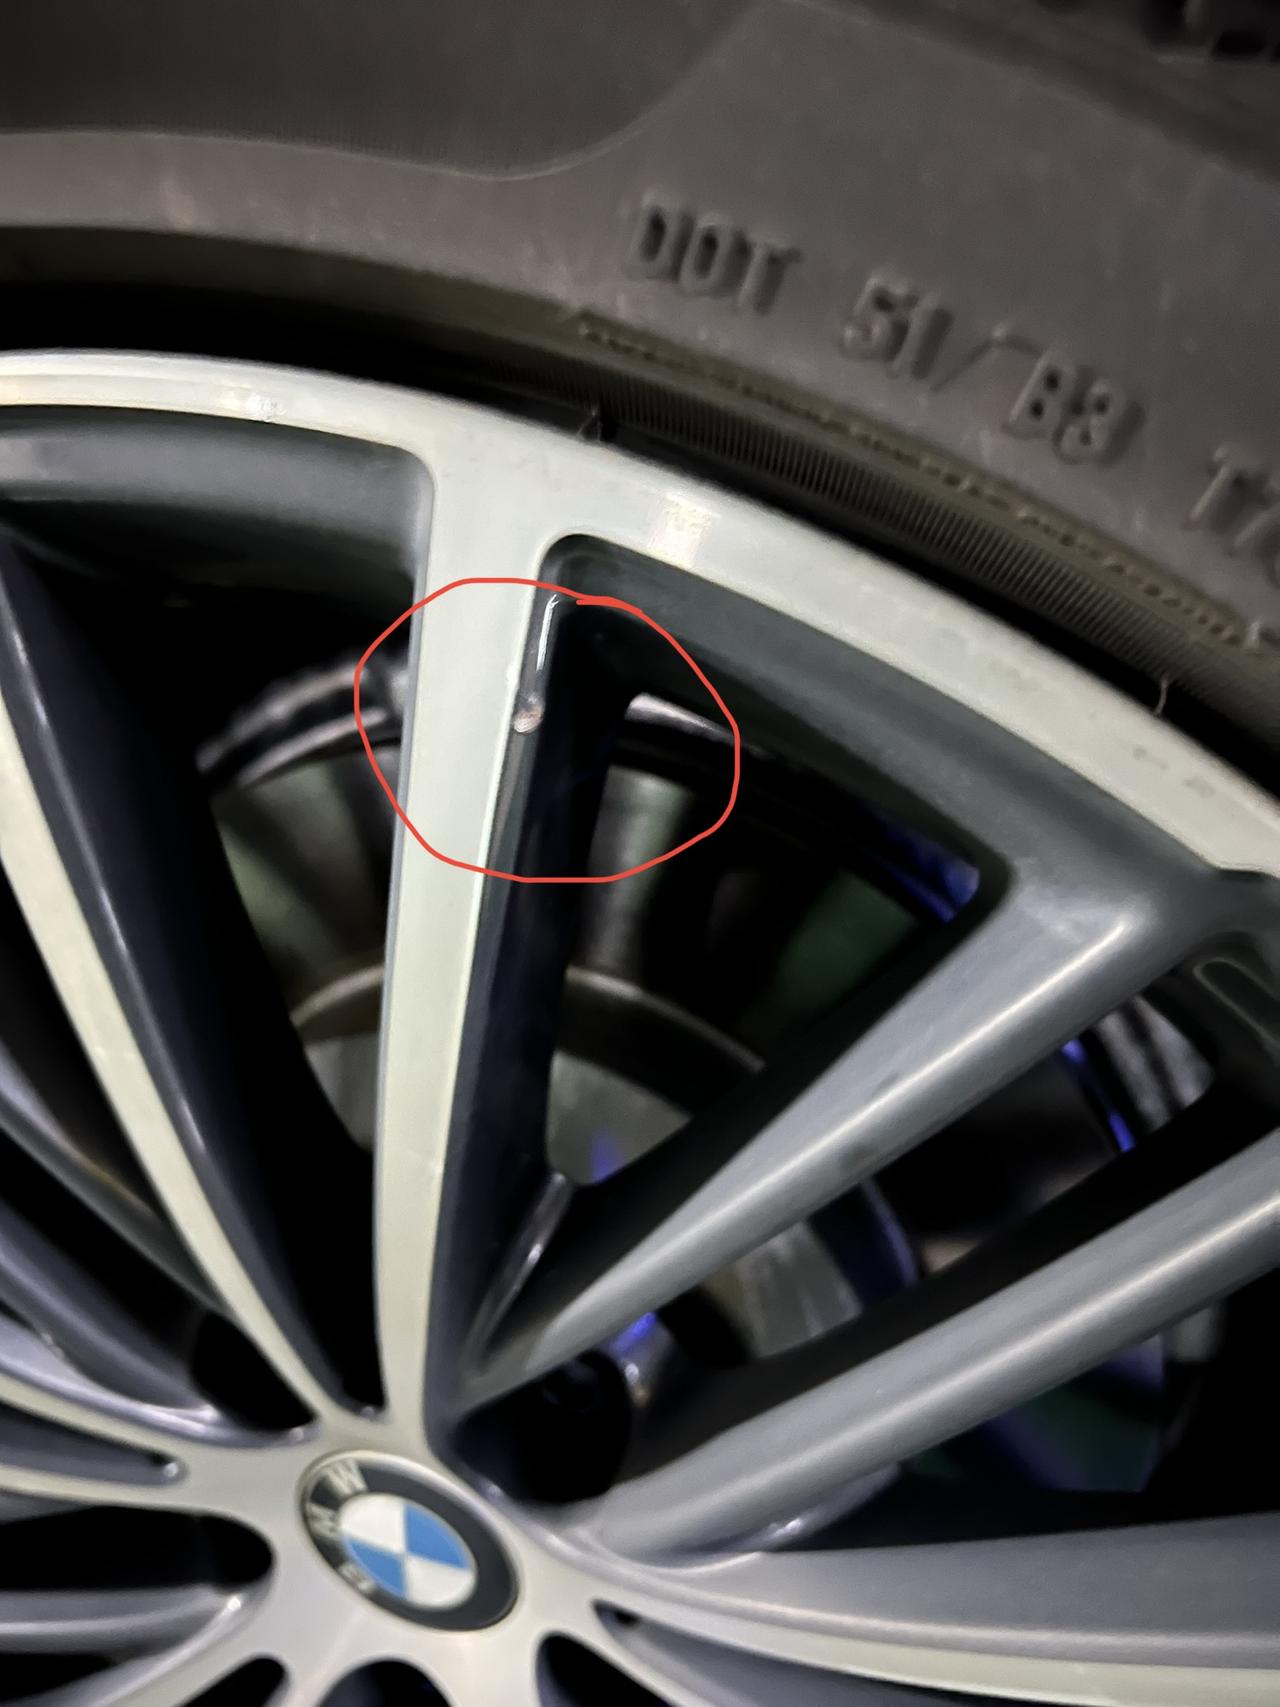 宝马5系 停车习惯性检查发现轮胎侧面掉了一块，轮毂挂了。还有轮毂像是磕掉了一块，有点没搞明白咋弄的。请问下这个影响行车安